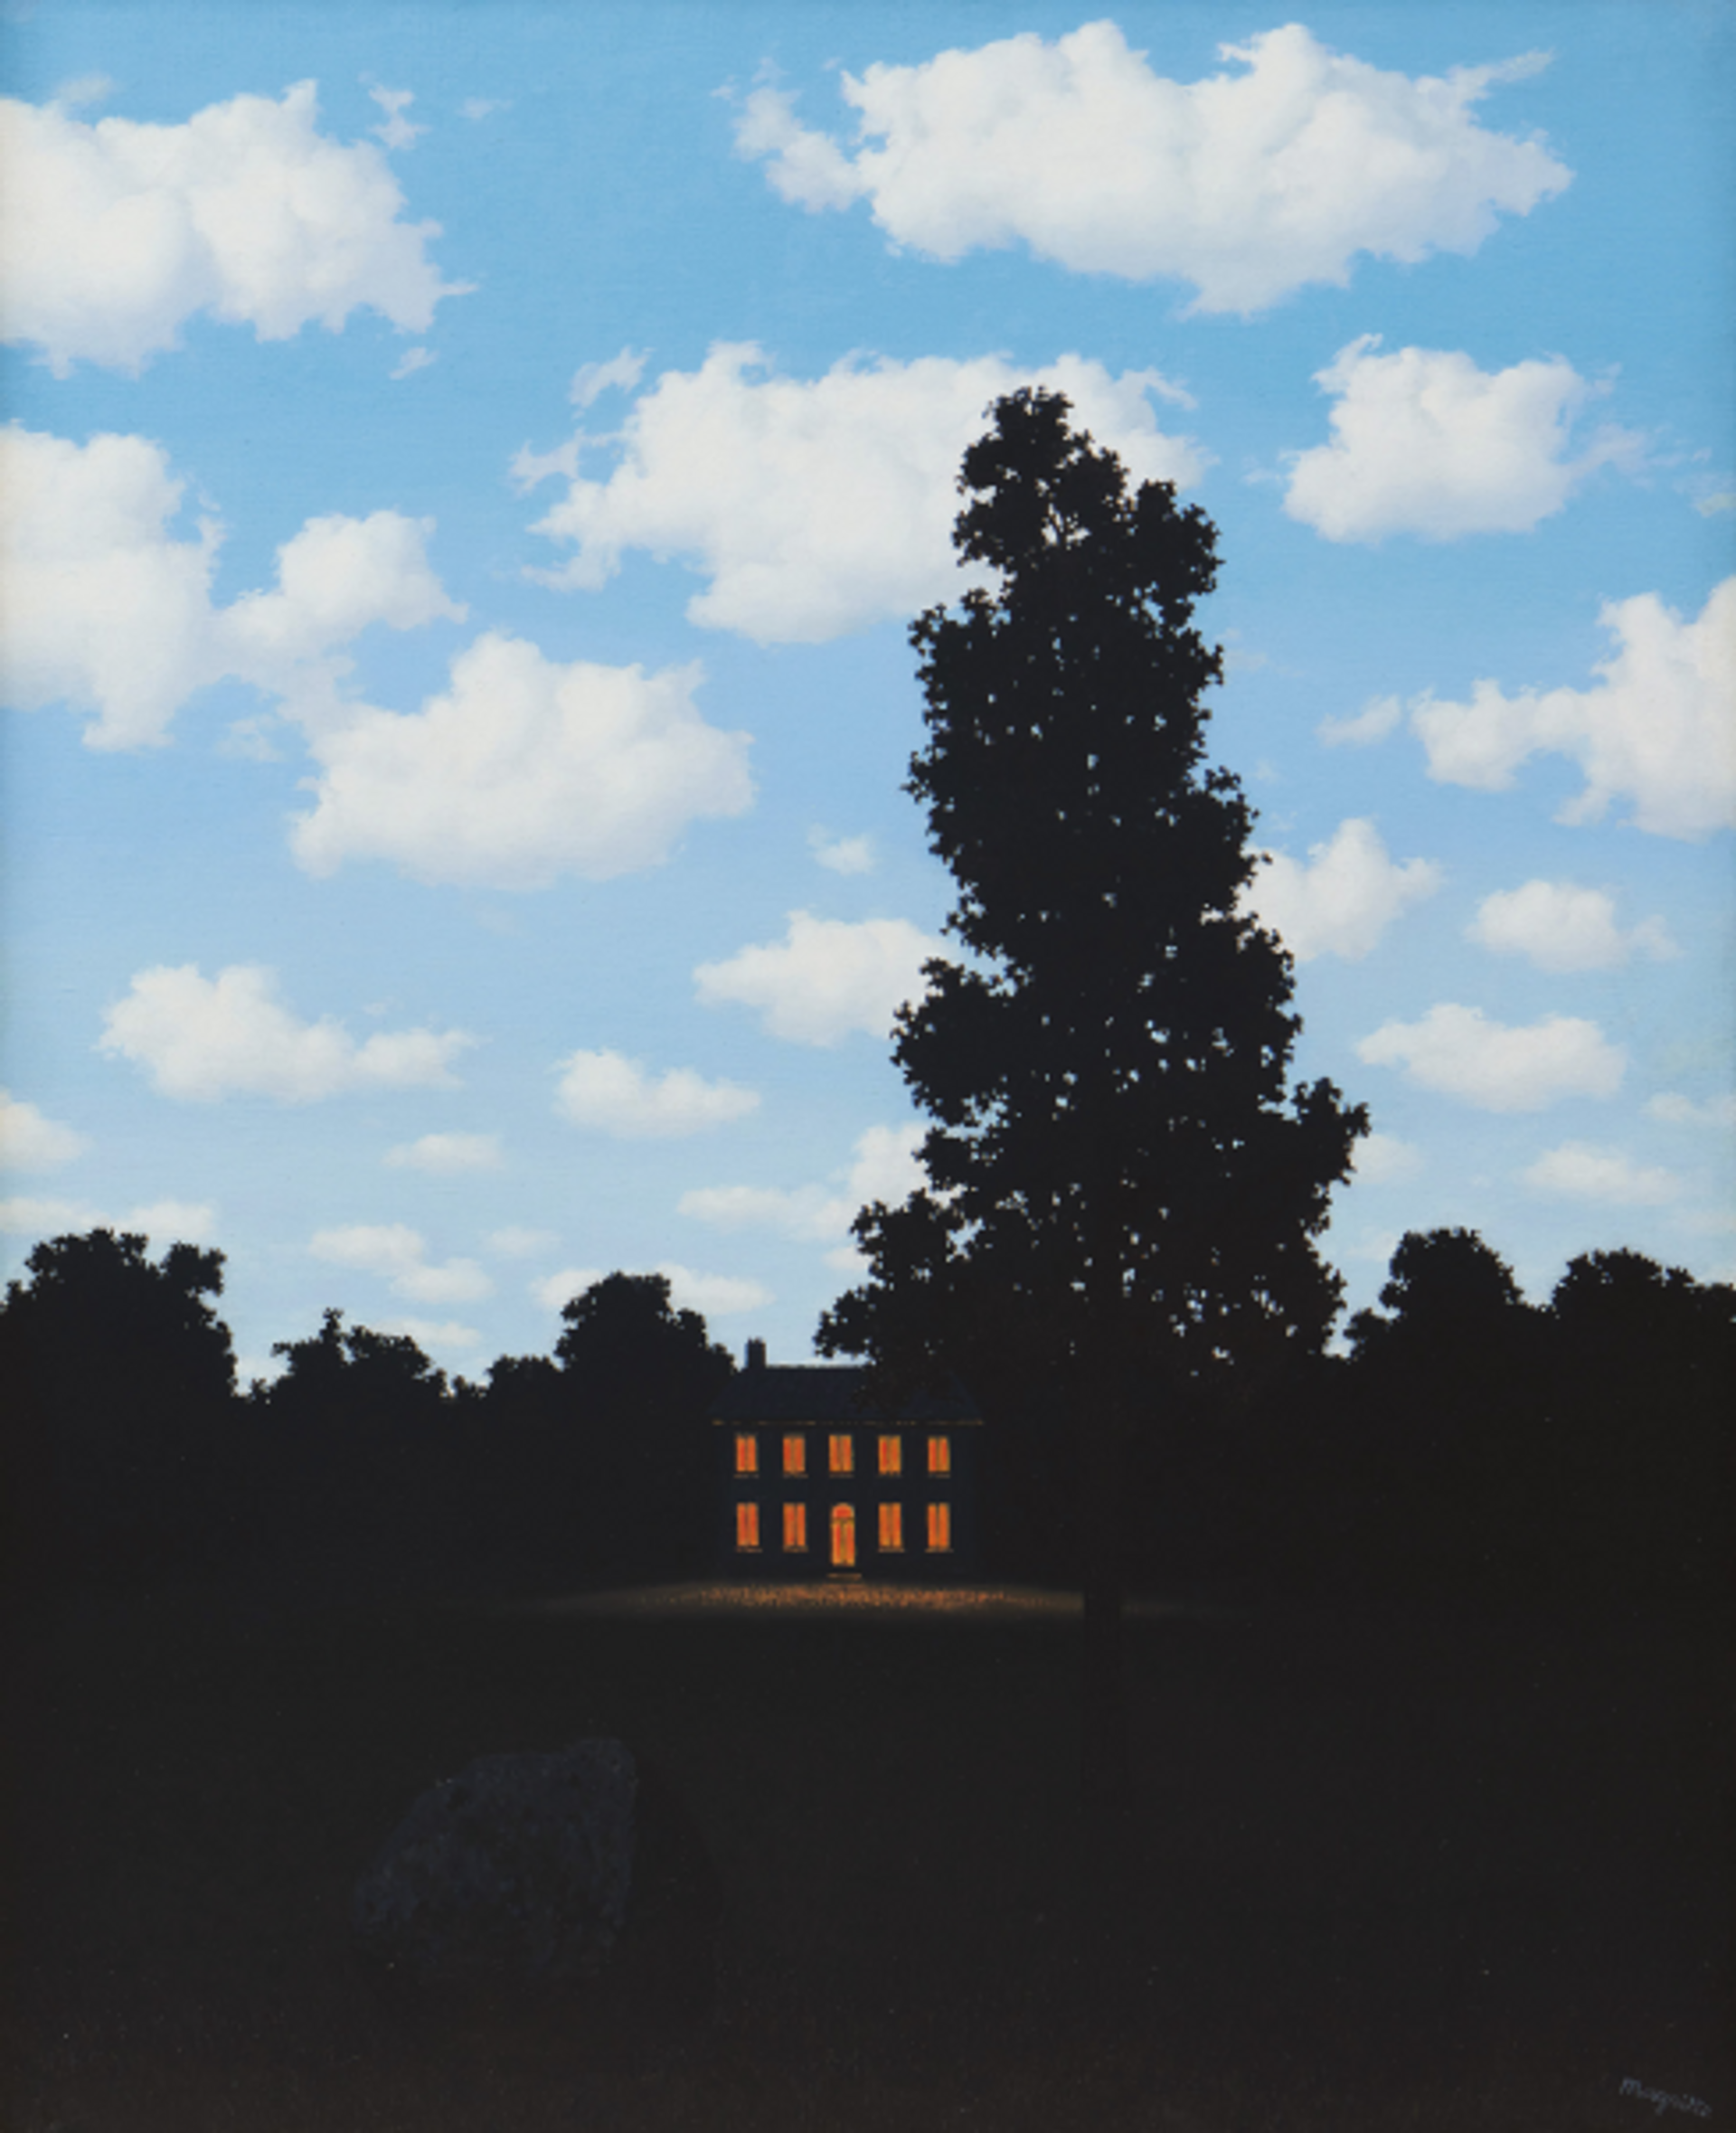 René Magritte, L’Empire des lumières, 1951, huile sur toile. © Sotheby’s